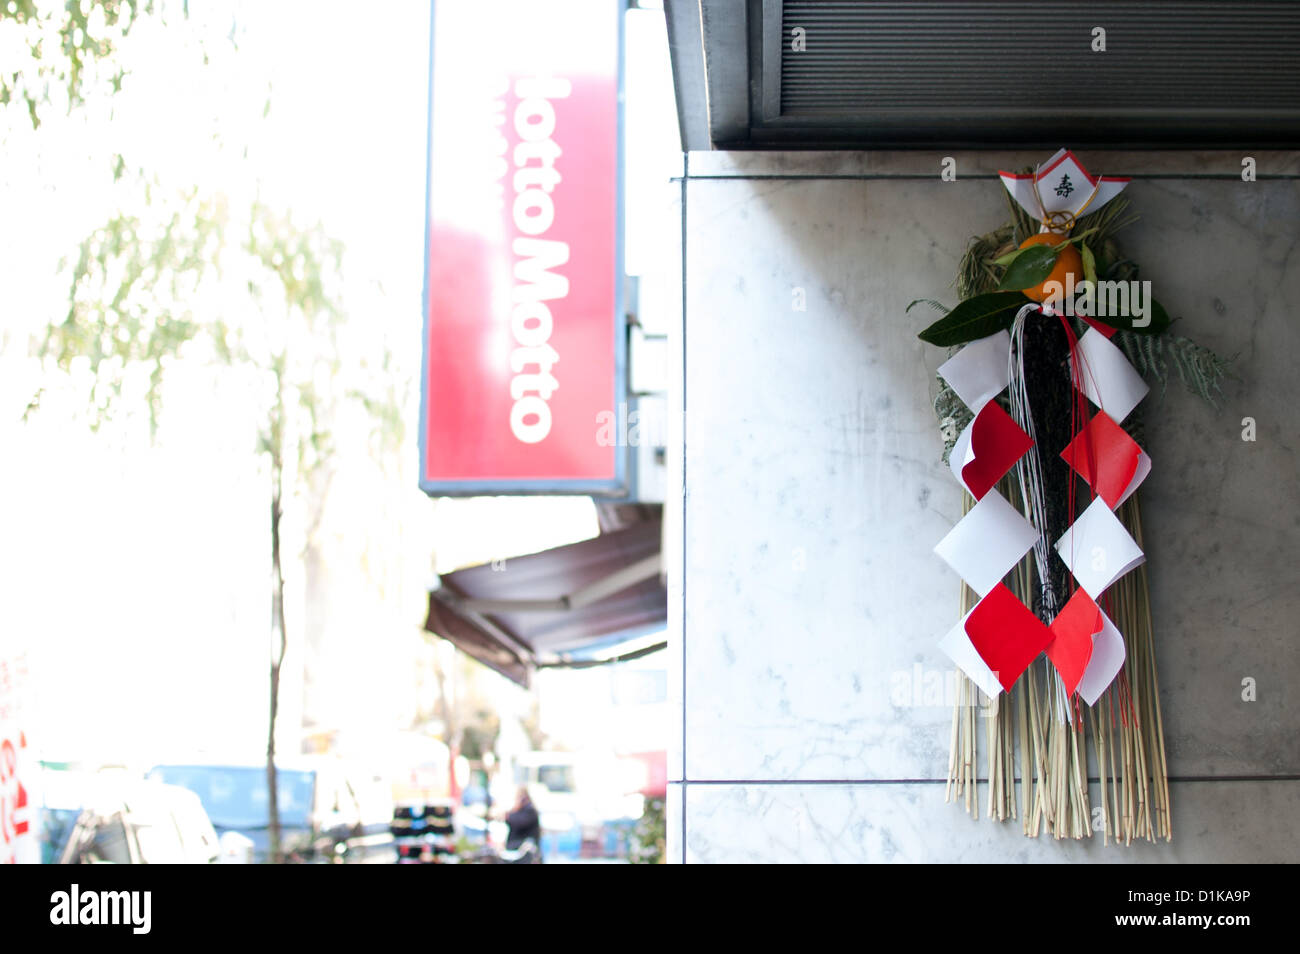 27. Dezember 2012, Tokyo, Japan - ist Shimekazari der Heilige Stroh Seile genannt "Shimenawa" zur Abwehr von bösen Geistern in der Silvester-Saison gemacht. Japanische Neujahr Dekorationen sind entfernt und verbrannt am 7. Januar. (Foto von Yumeto Yamazaki/AFLO) Stockfoto